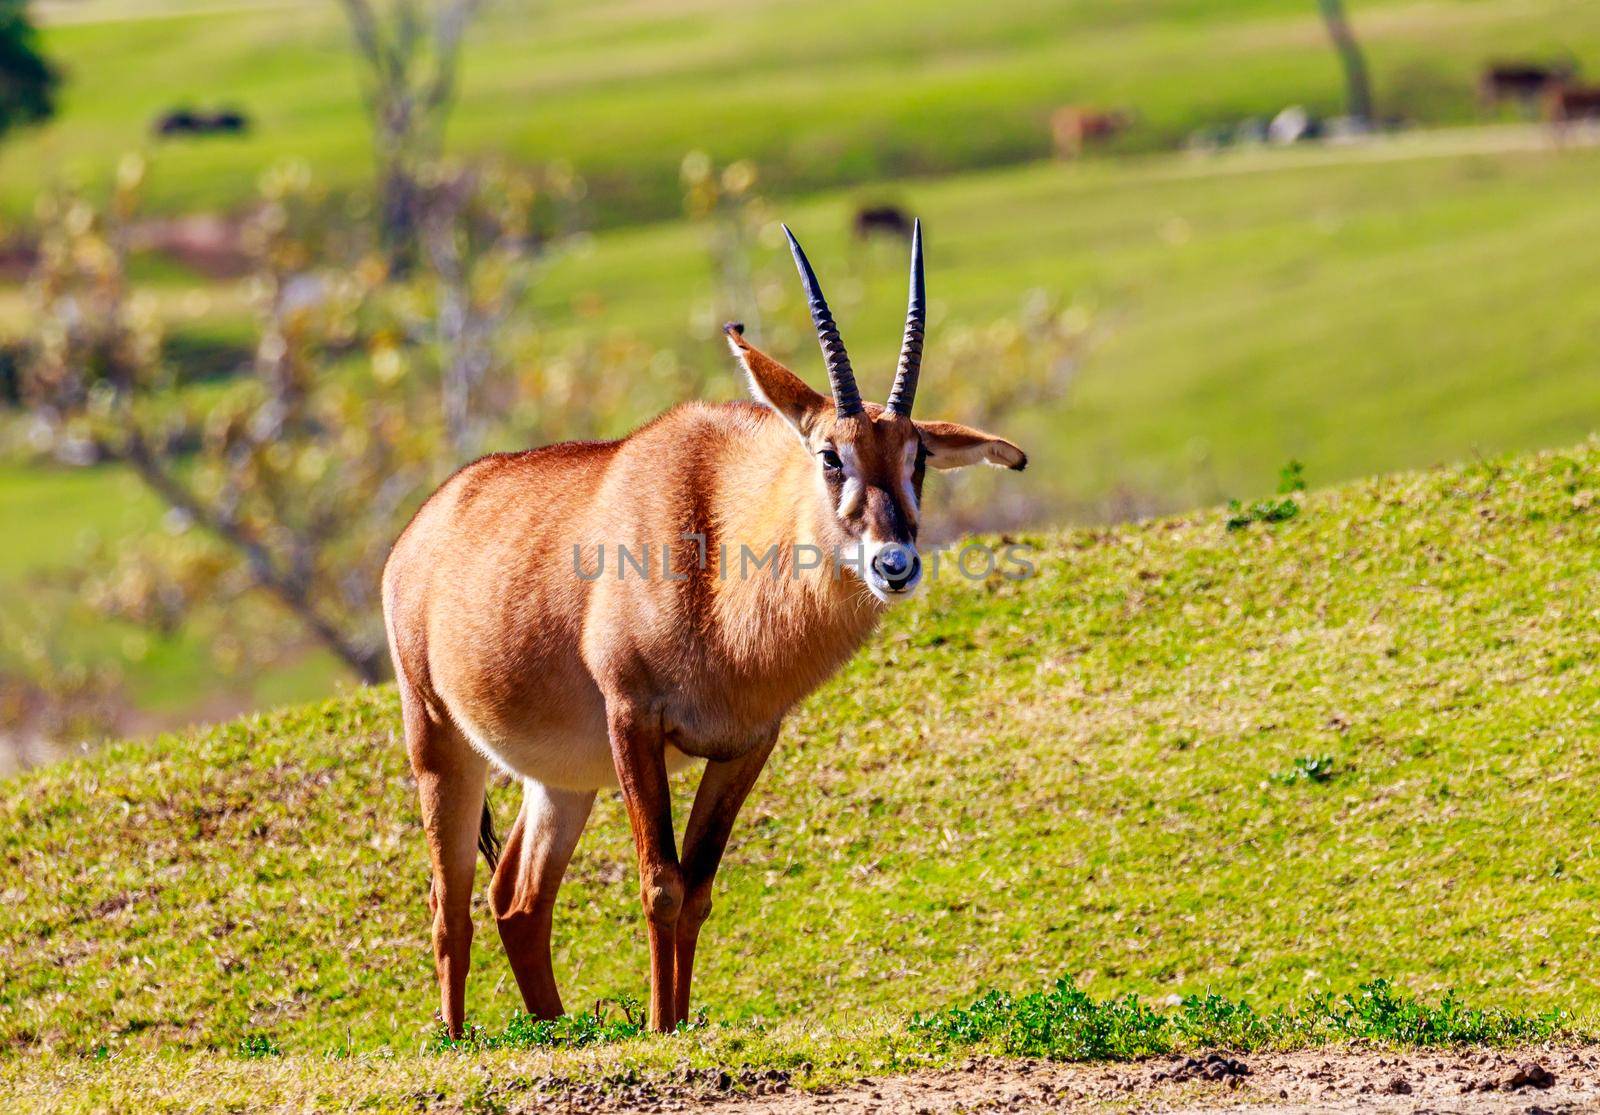 A Roan Antelope walking across the grassland.